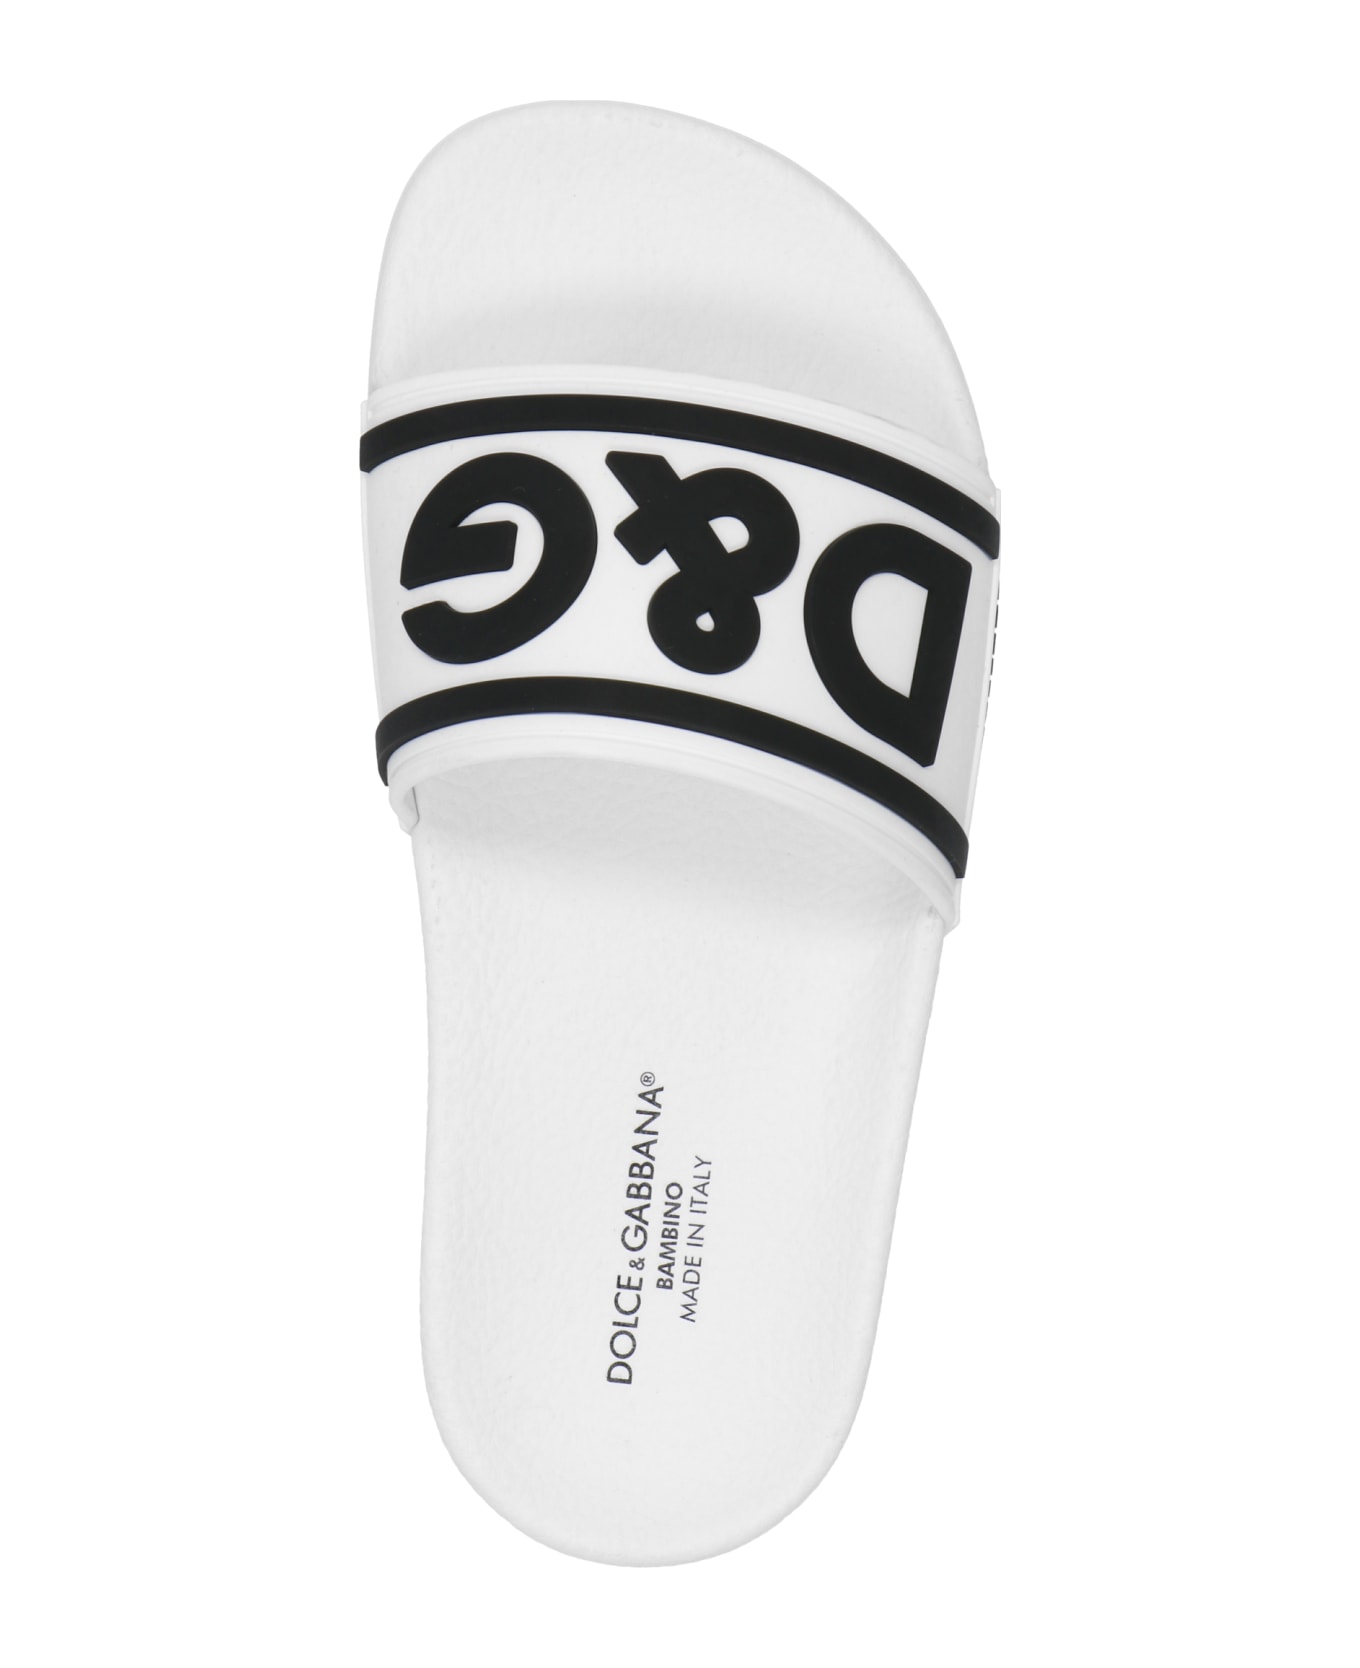 Dolce & Gabbana Logo Slides - White/Black シューズ